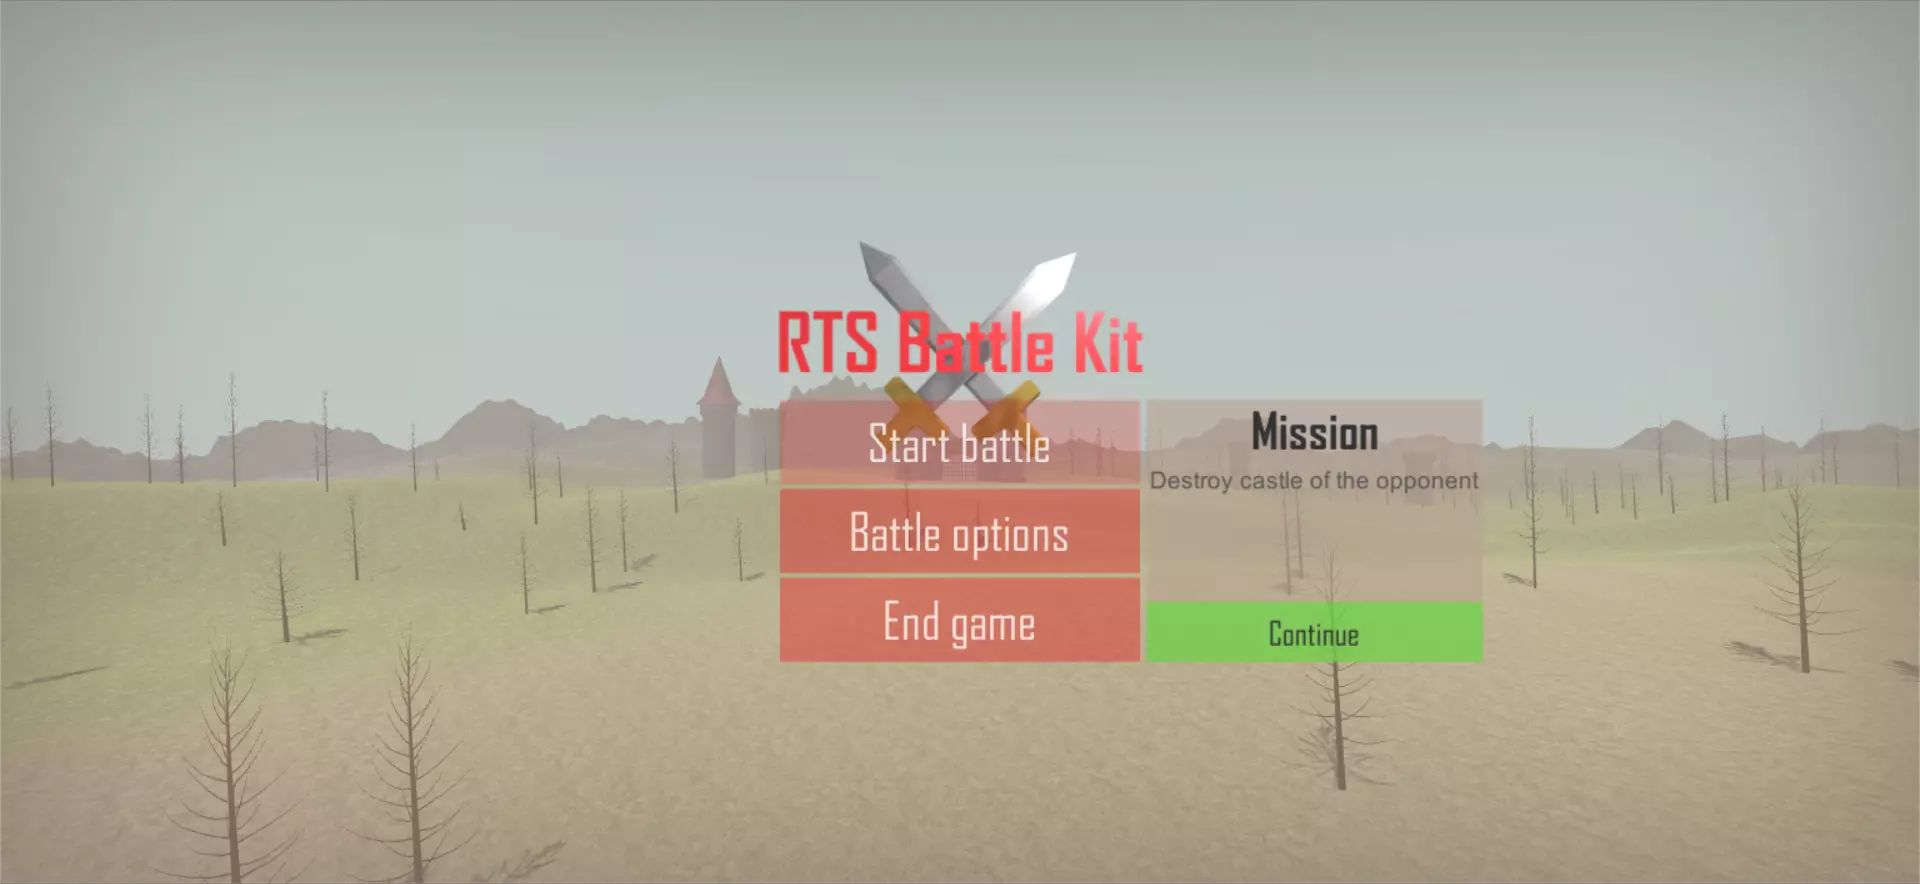 پروژه RTS Battle Kit برای یونیتی - 29